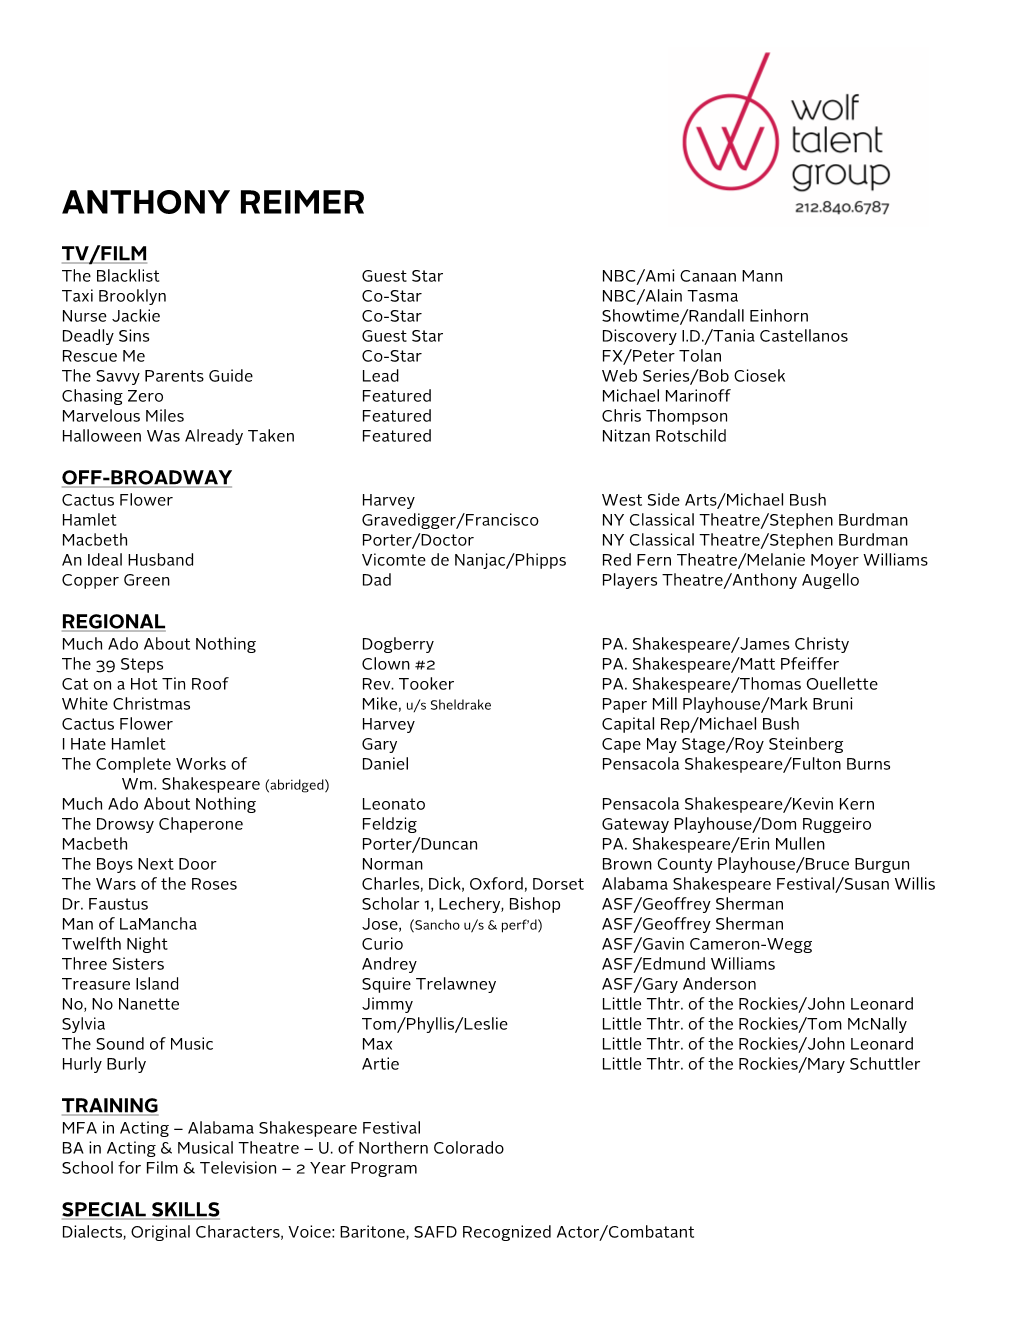 Anthony Reimer Resume